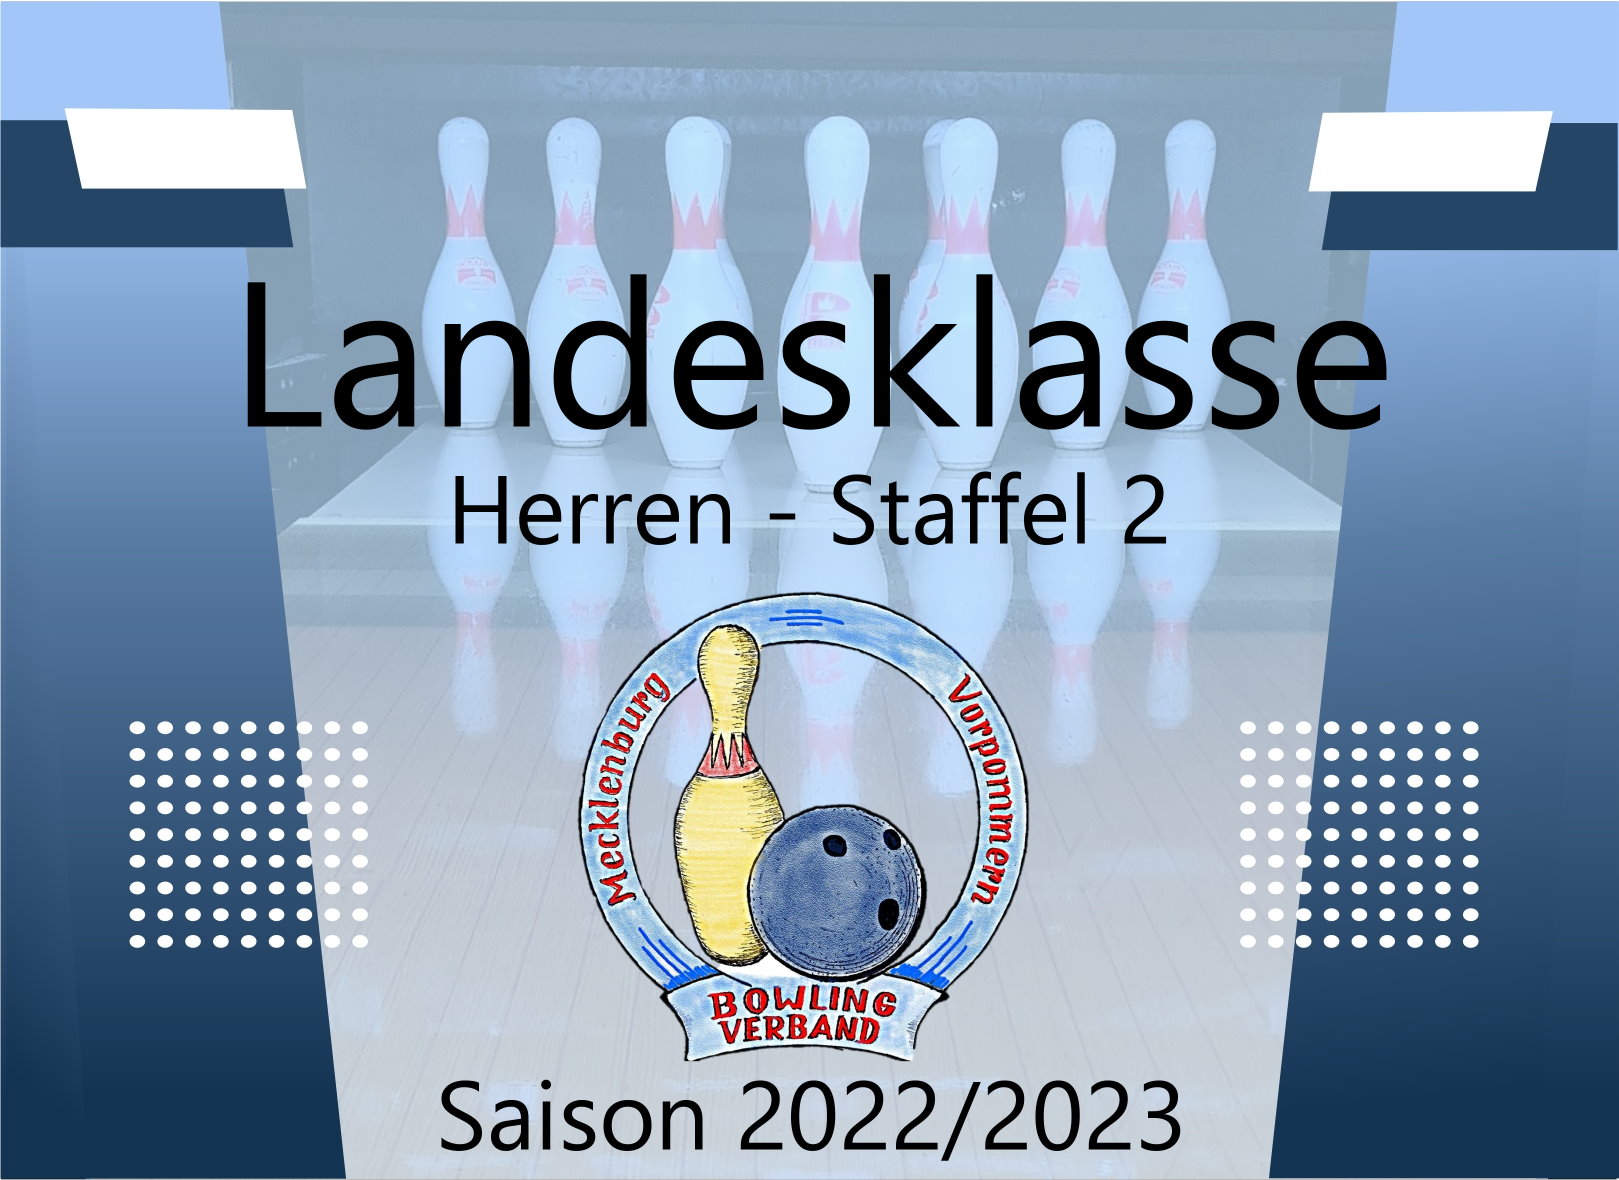 Landesklasse Herren Staffel 2 - 2. Spieltag